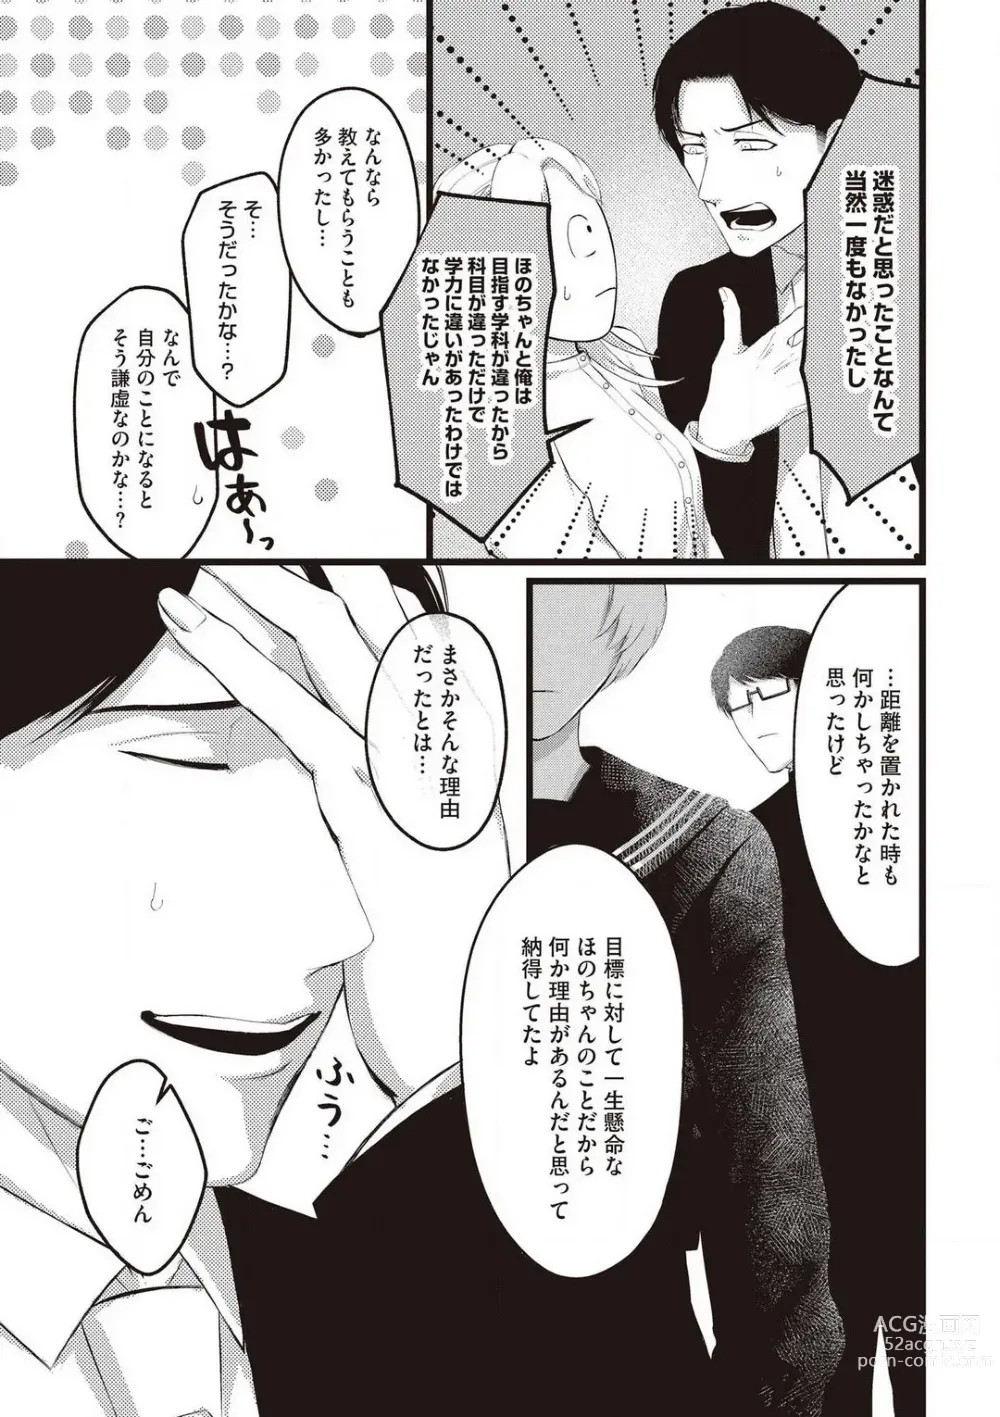 Page 25 of manga Hatsukoi Osananajimi no Ai no Moukou Nogarerarenai Saikai H